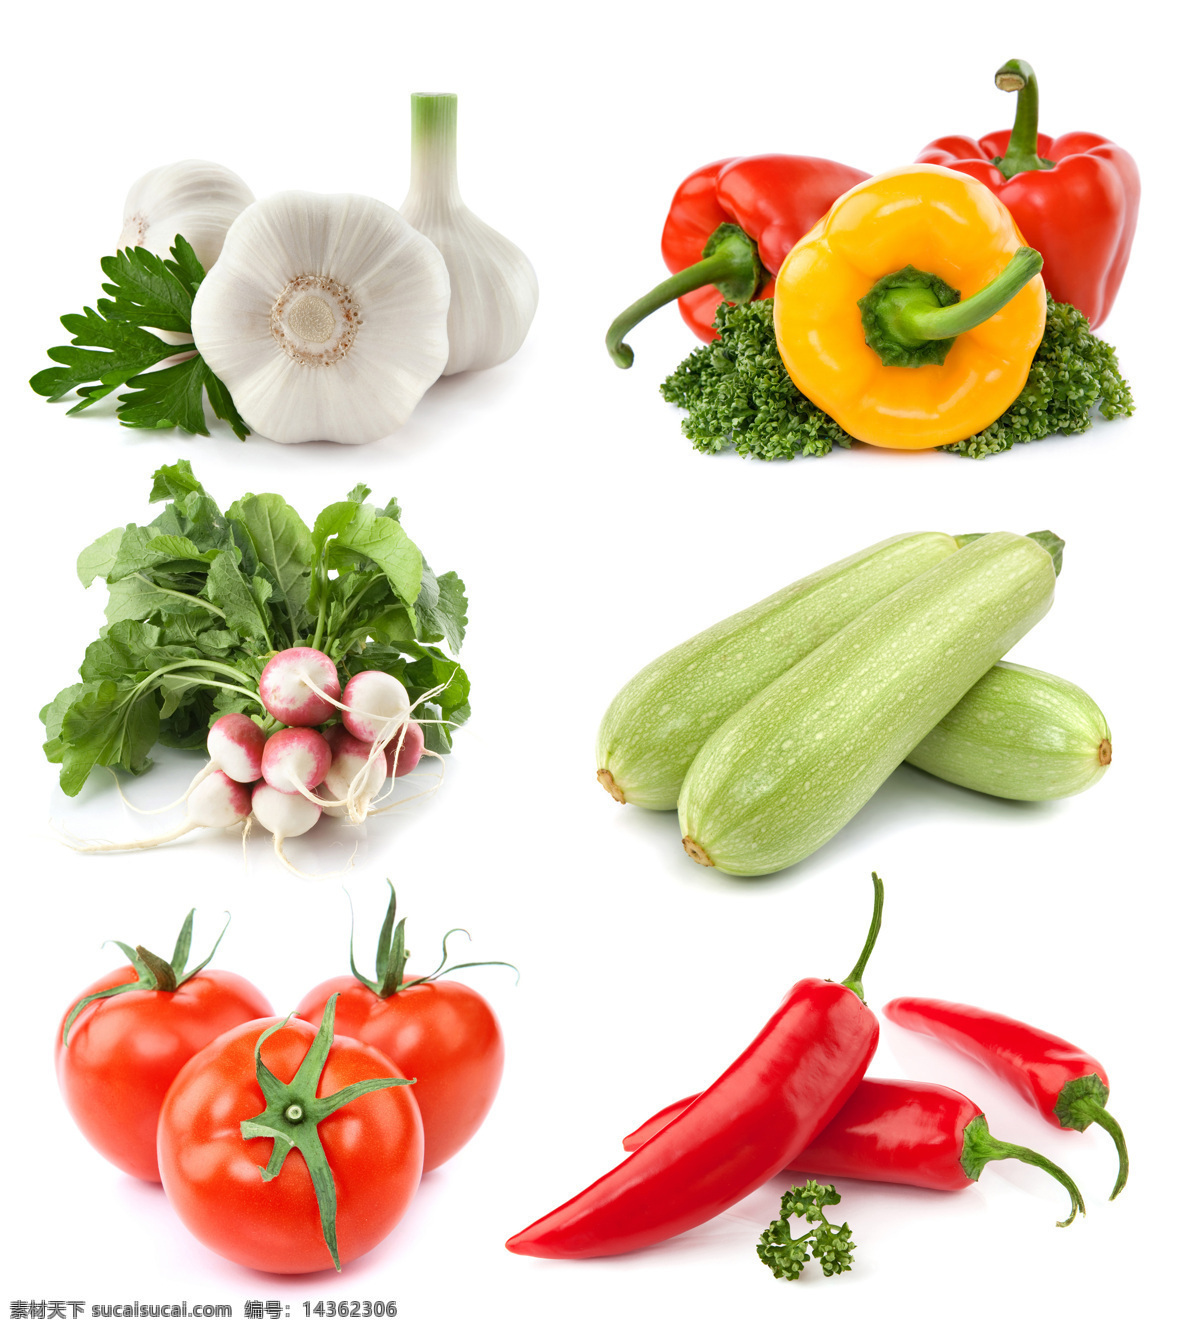 蔬菜广告素材 大蒜 辣椒 萝卜 南瓜 西红柿 蔬菜 蔬菜摄影 蔬菜素材 水果蔬菜 餐饮美食 白色